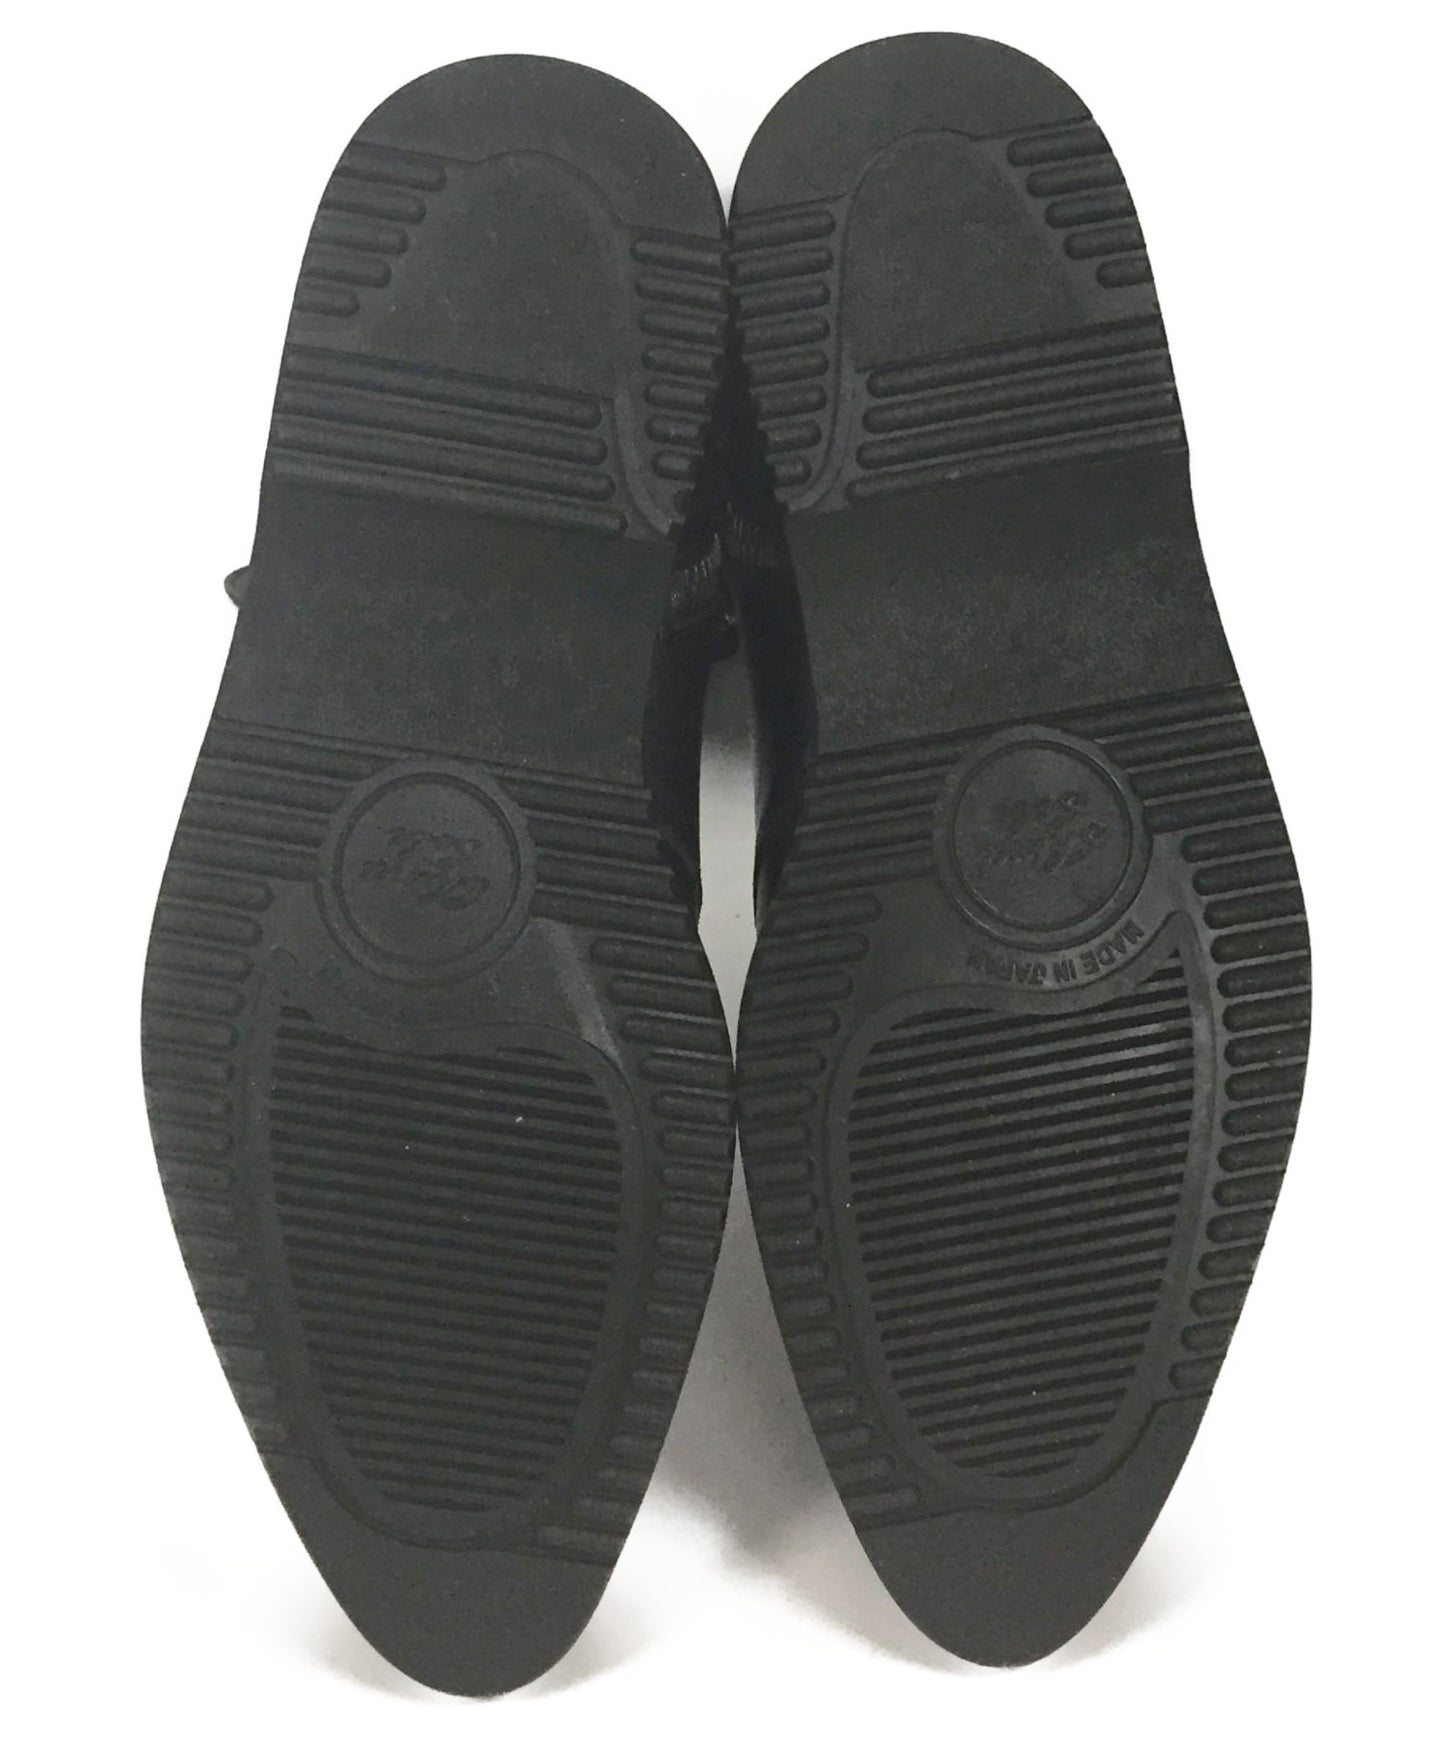 Yohji Yamamoto side-zip zip boots / boots lace-up fj-e08-721